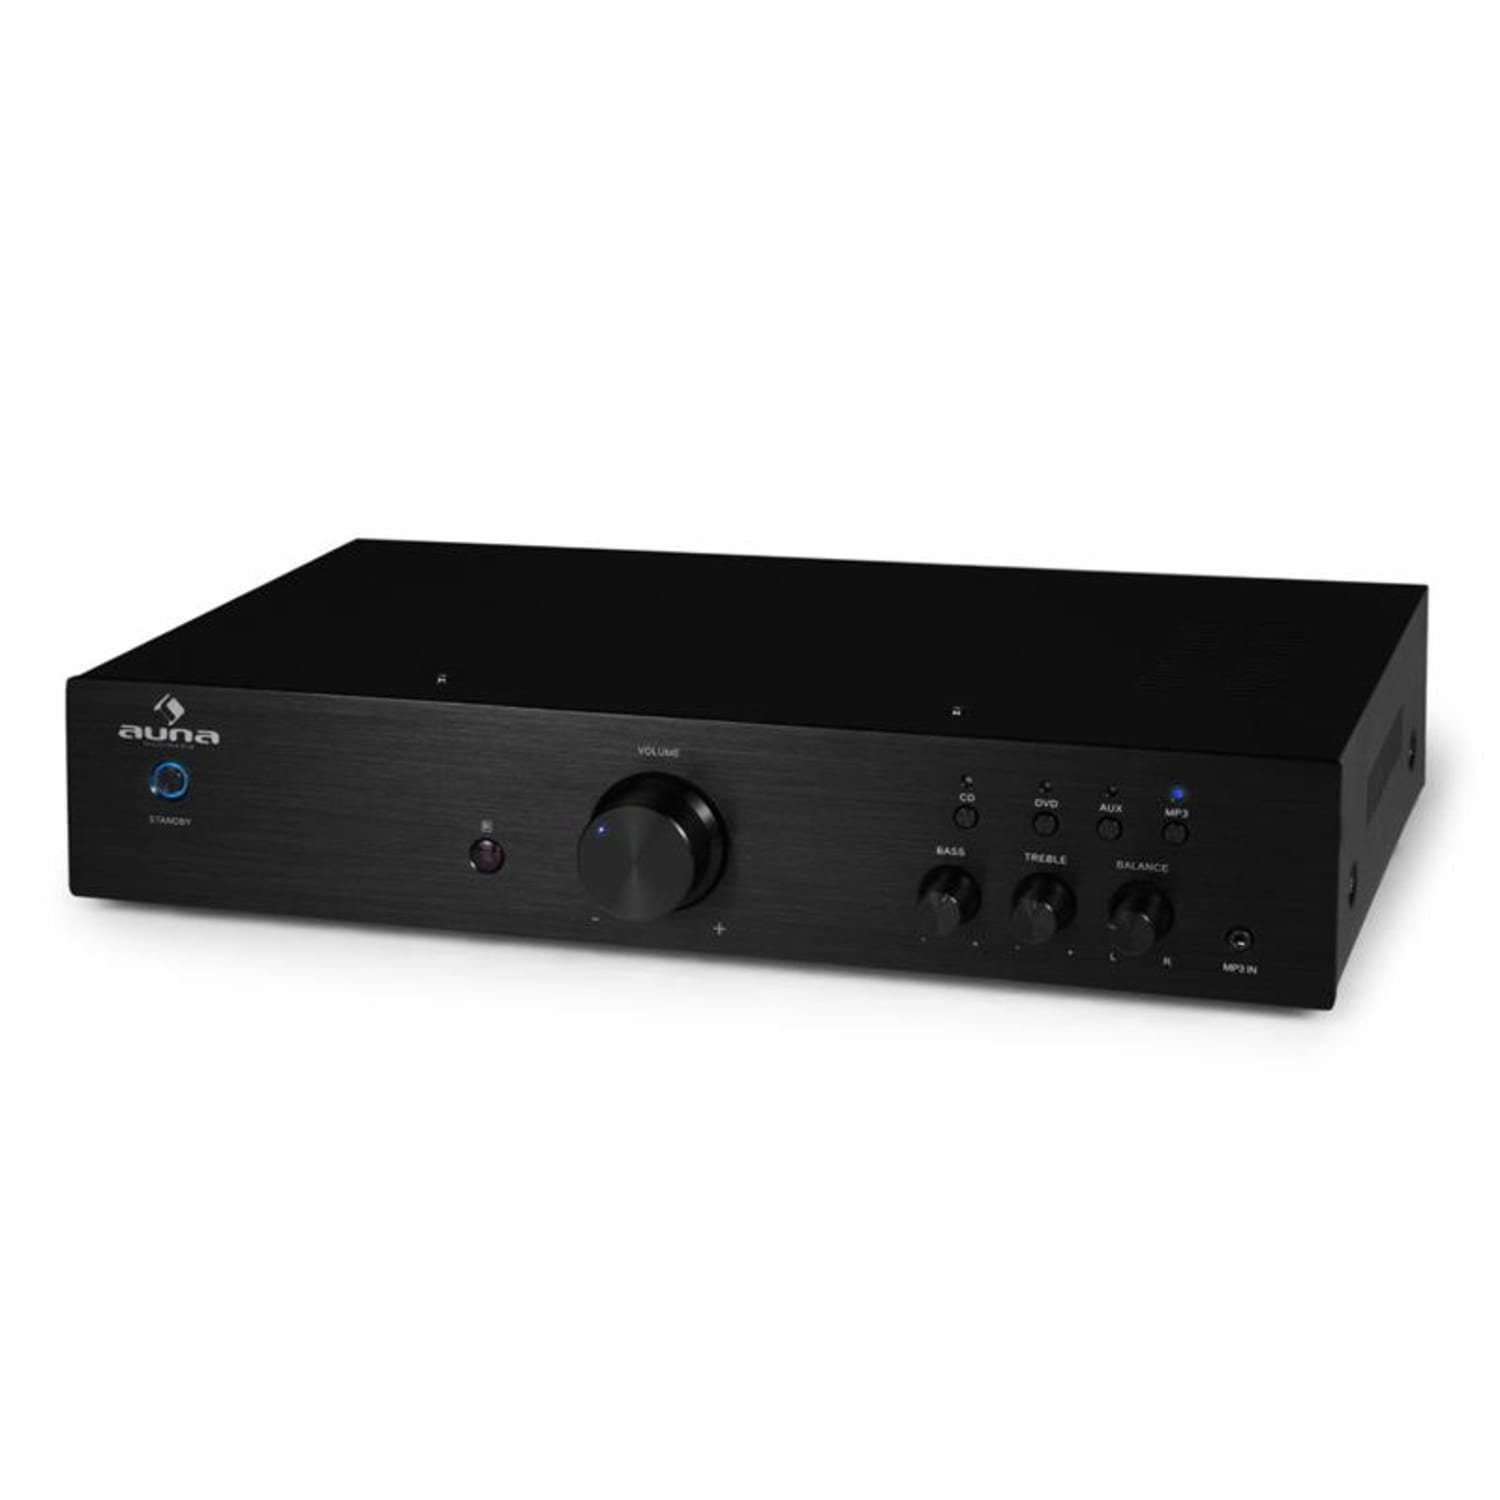 125 HiFi Stereo Auna Schwarz Audio drei W, ein Amplifier) und AV2-CD508 Verstärker Line-Ausgang, Audioverstärker Kanäle: Stereo-Cinch-Audio-Eingänge (Anzahl